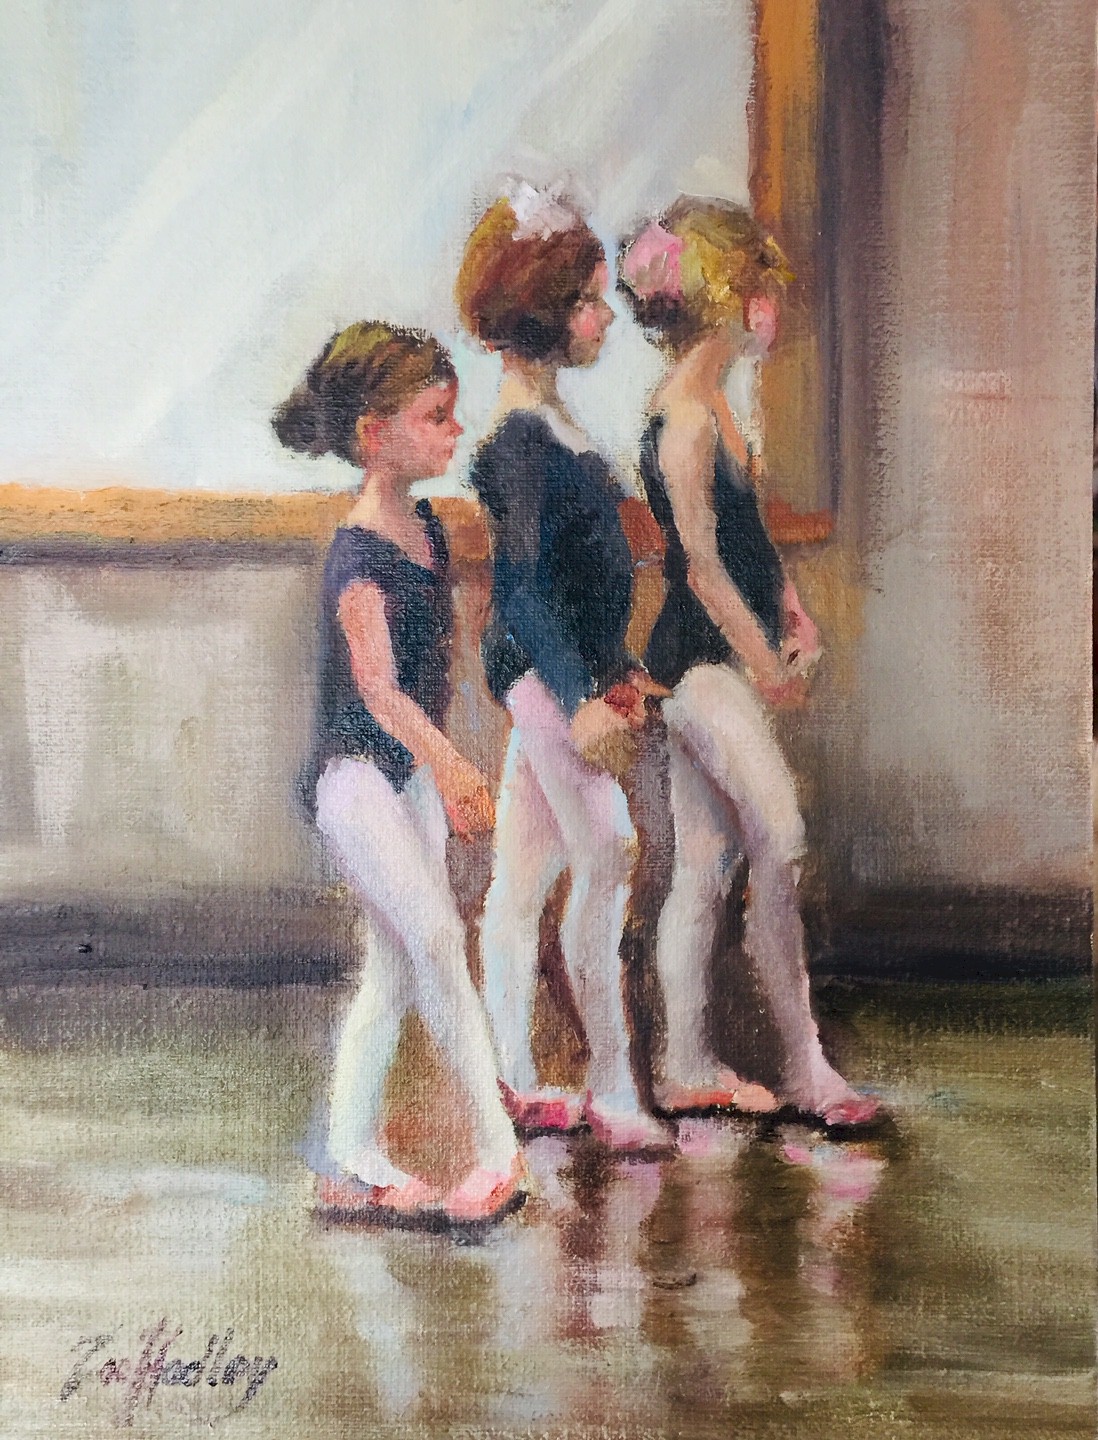 Petite Ballerinas